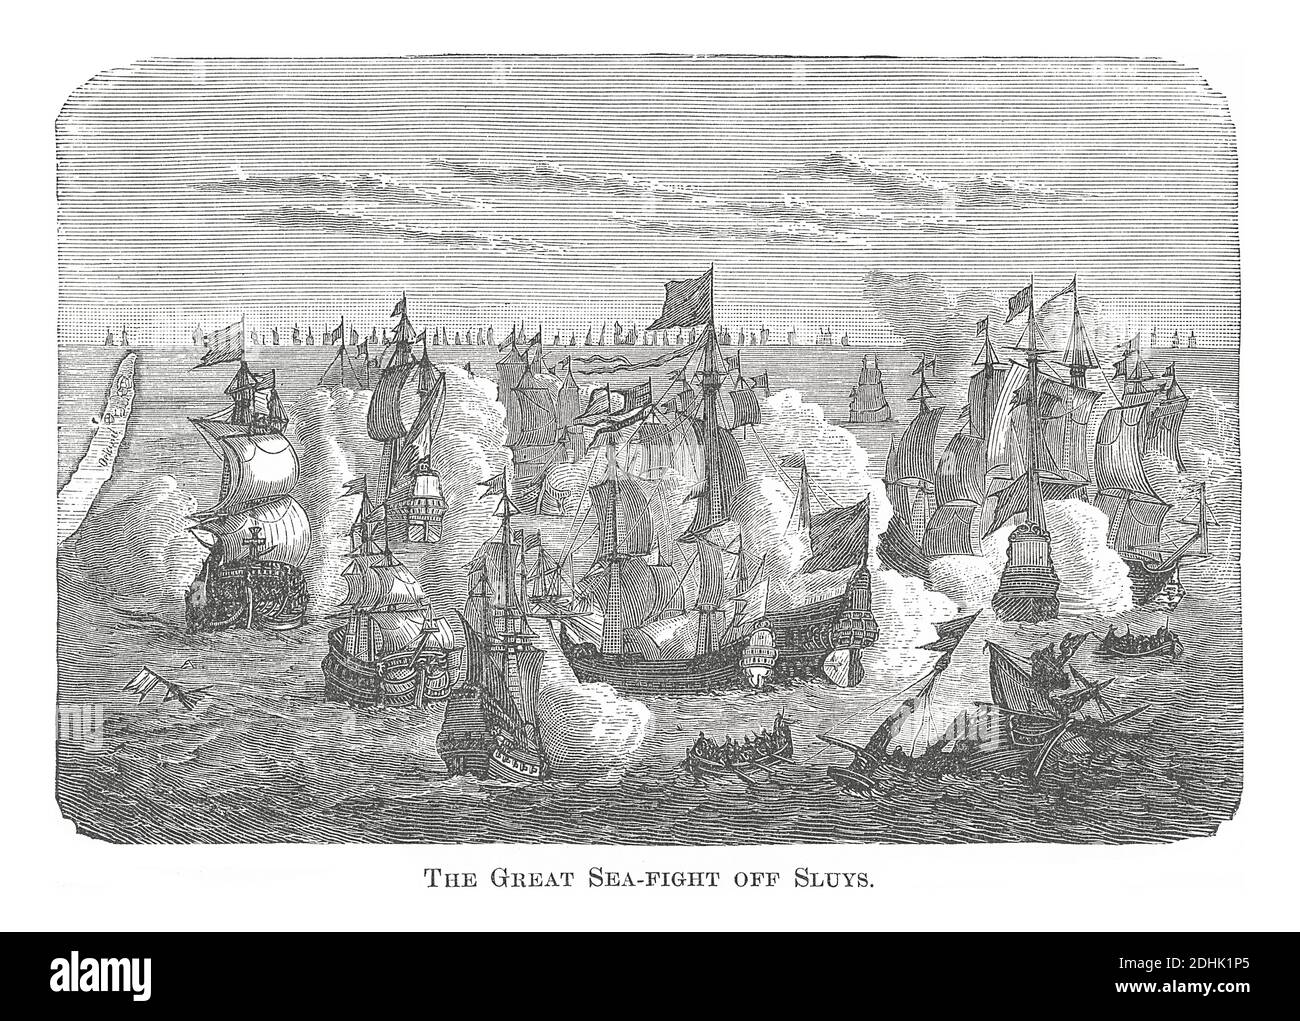 Illustrazione ottocentesca della grande battaglia di Sluys, combattuta il 24 giugno 1340 e uno dei conflitti di apertura della guerra dei cent'anni tra Engl Foto Stock